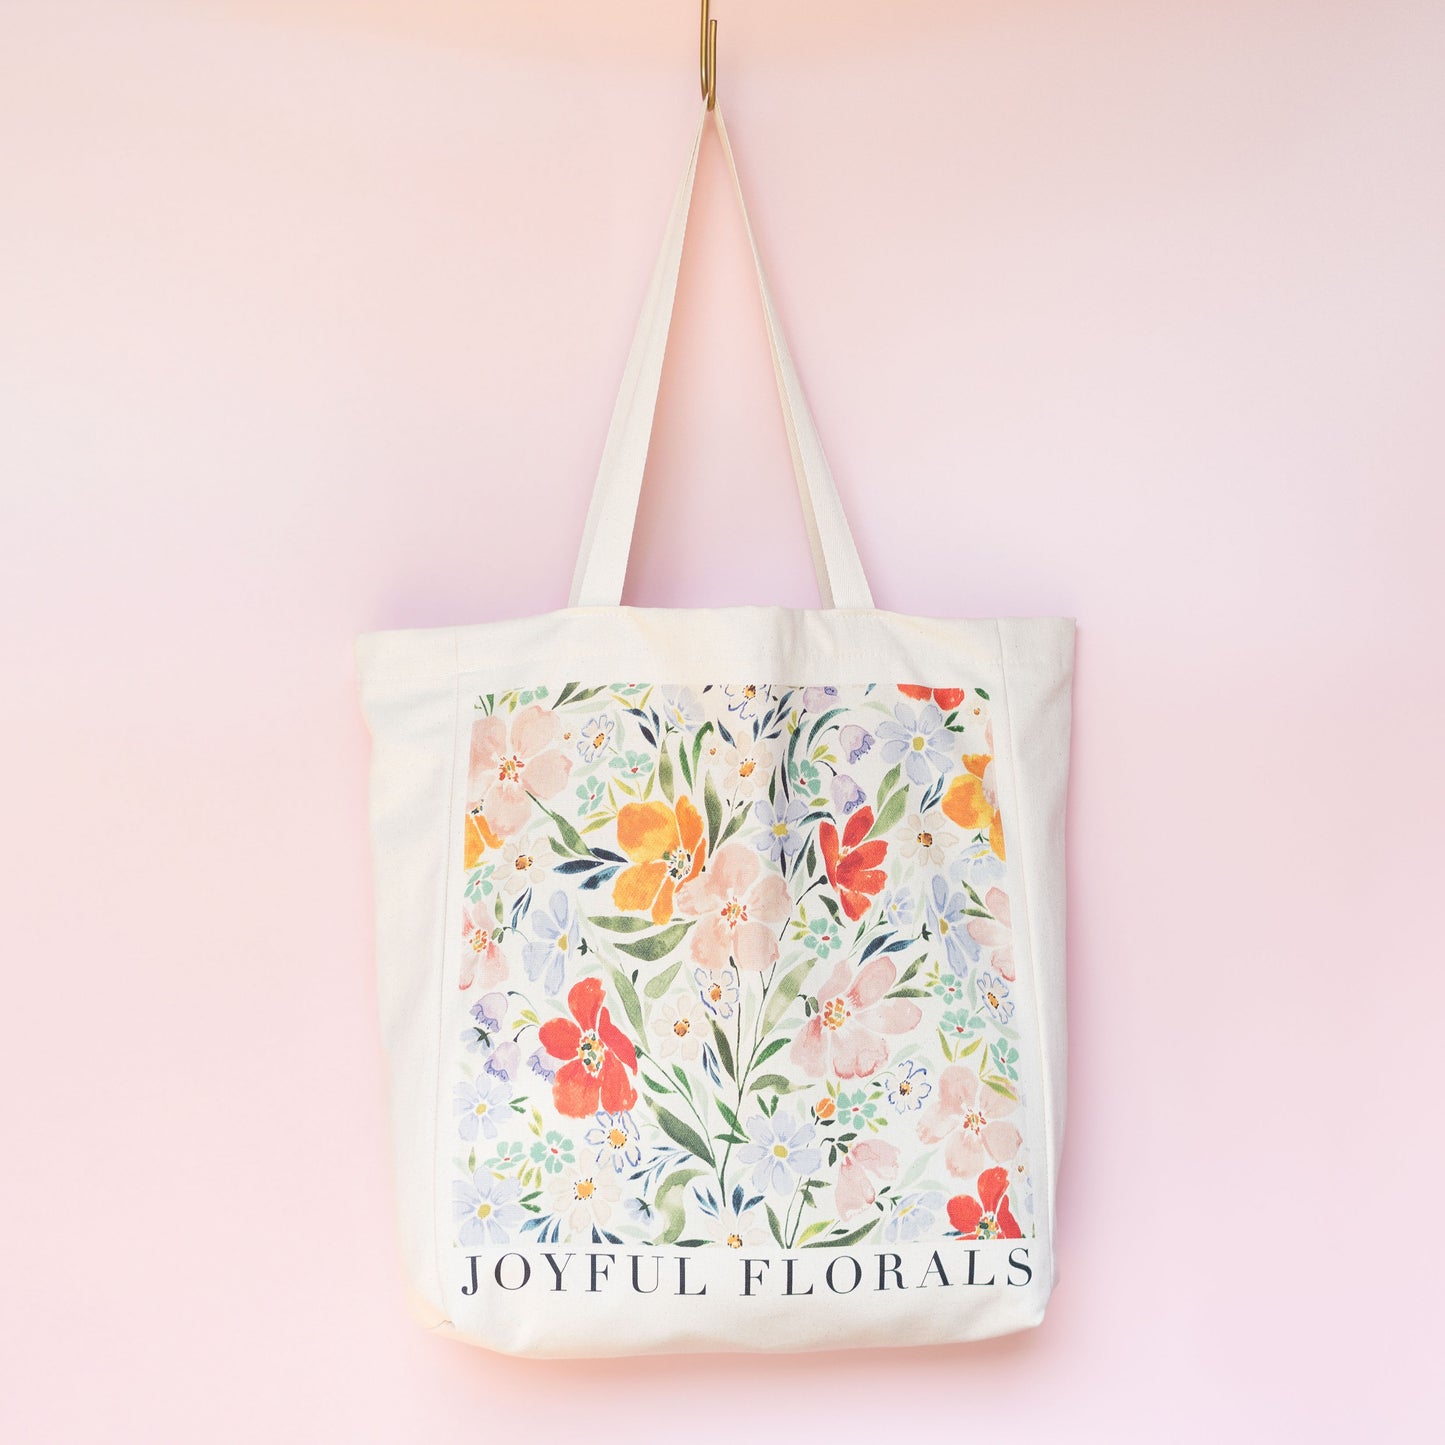 Joyful Florals Tote Bag